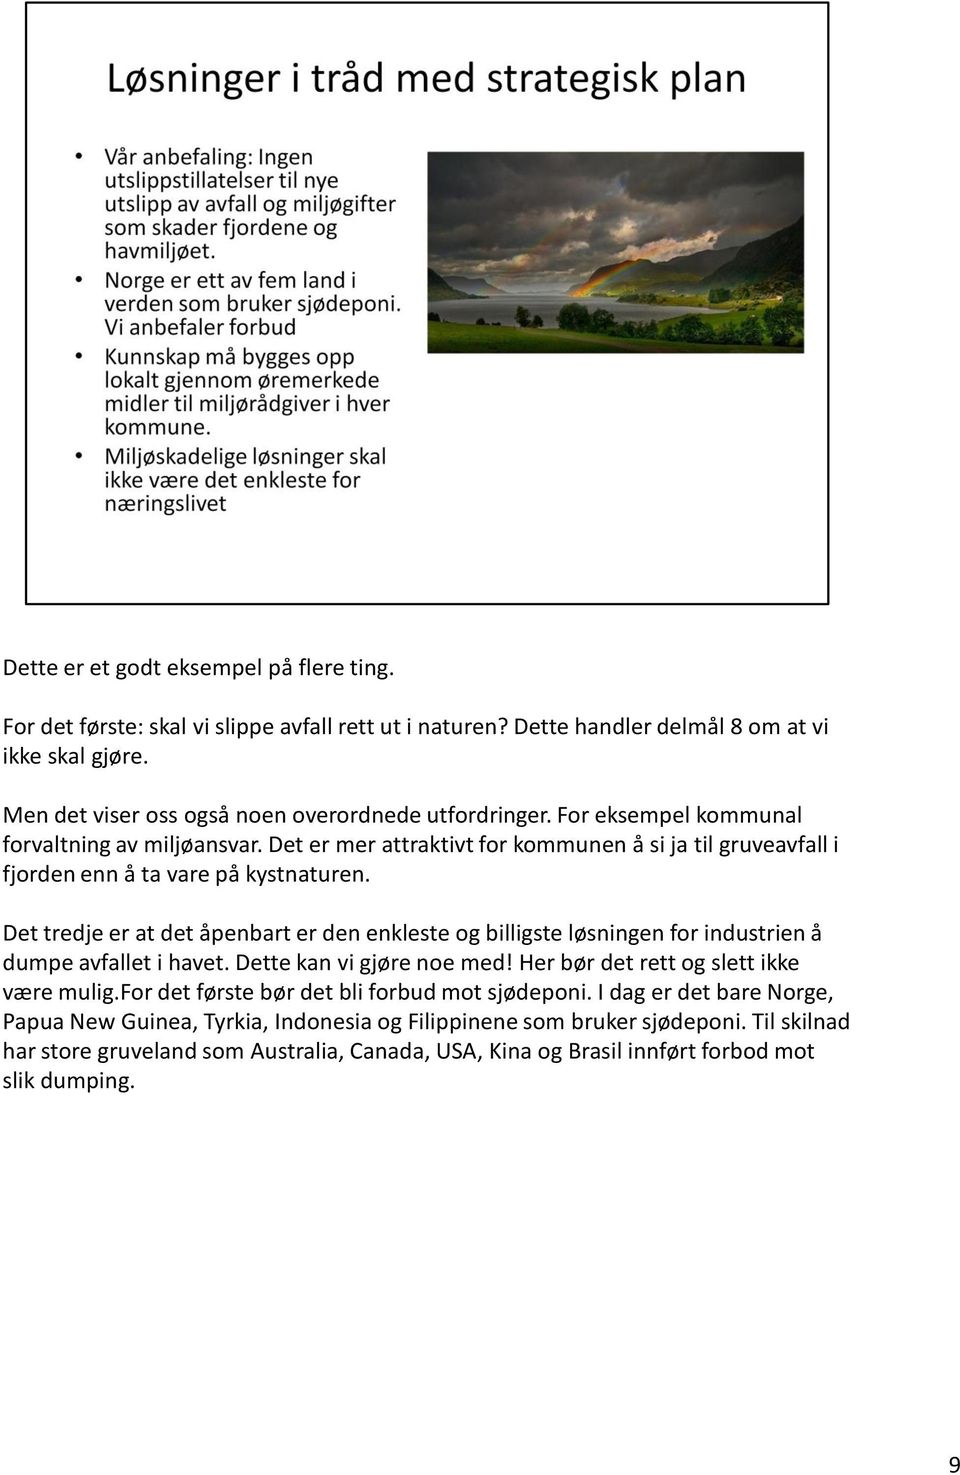 Det er mer attraktivt for kommunen å si ja til gruveavfall i fjorden enn å ta vare på kystnaturen.